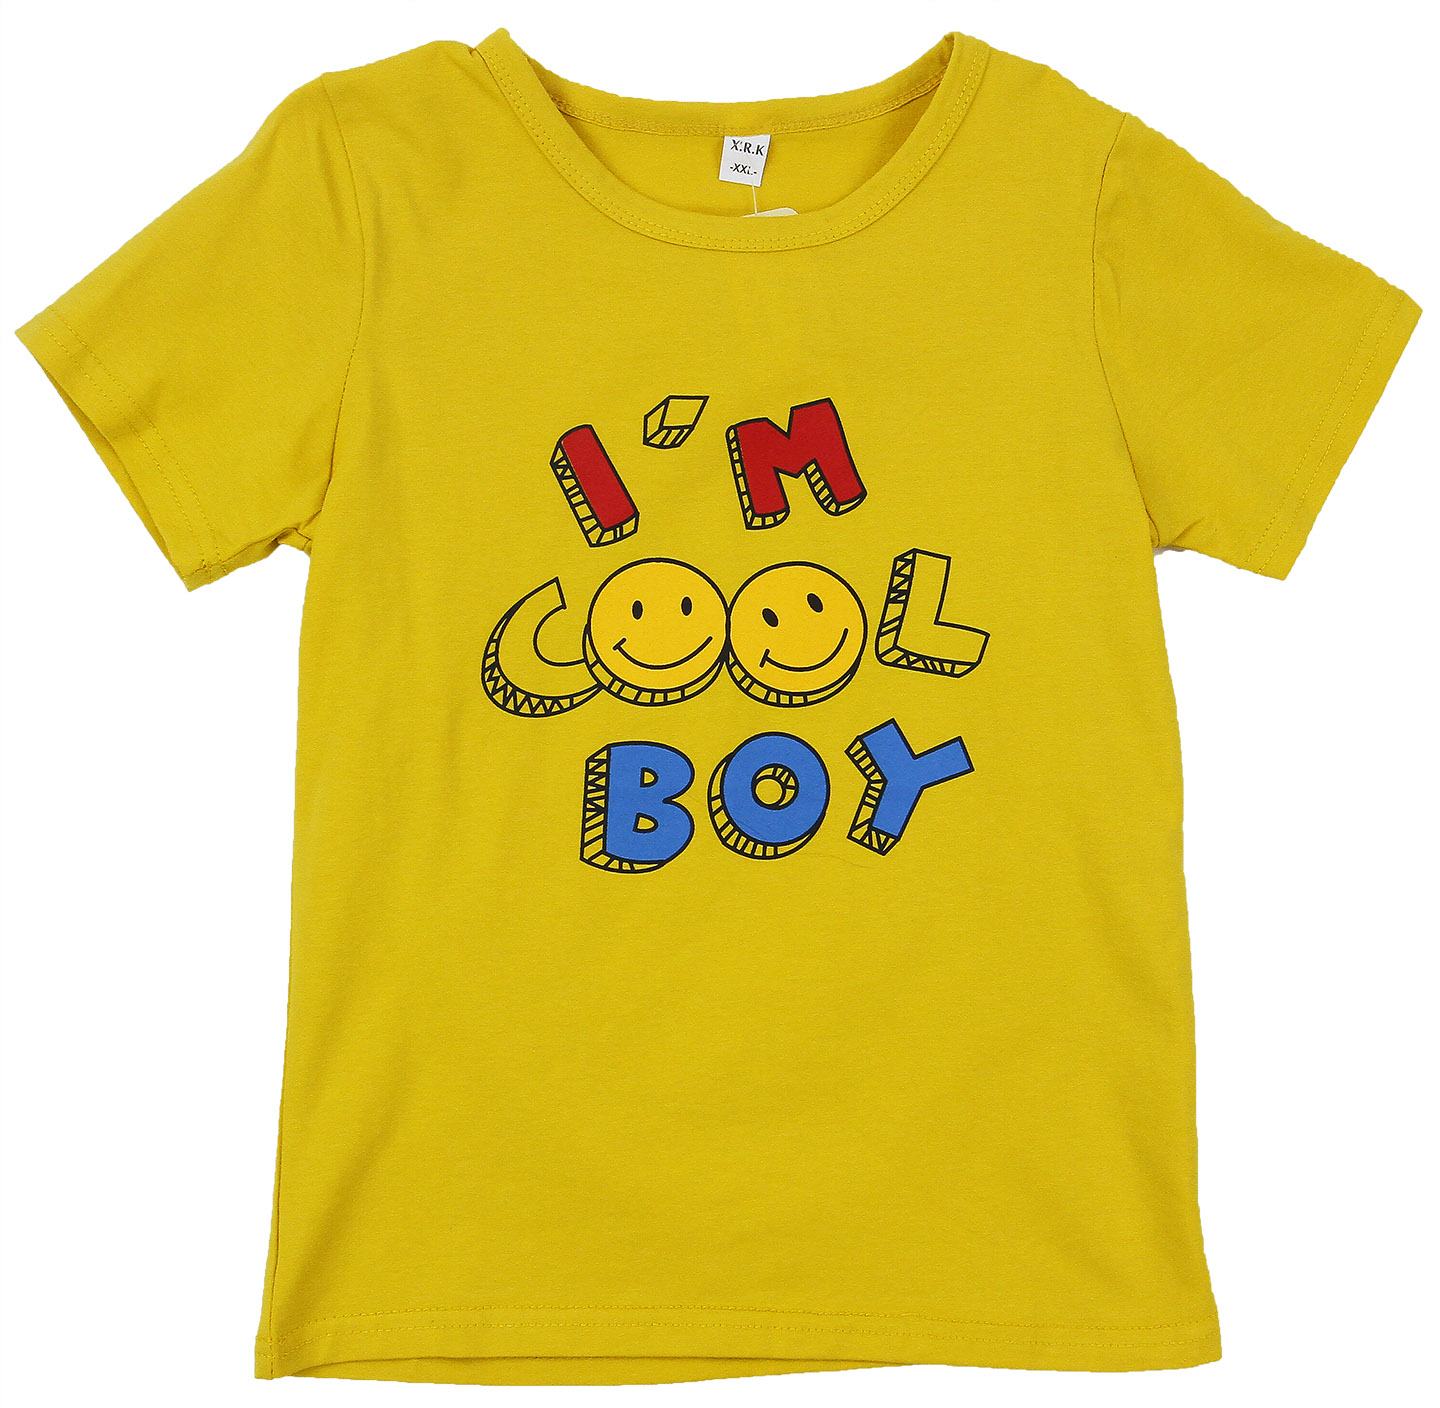 9103-1 Футболка I am cool boy ДМ